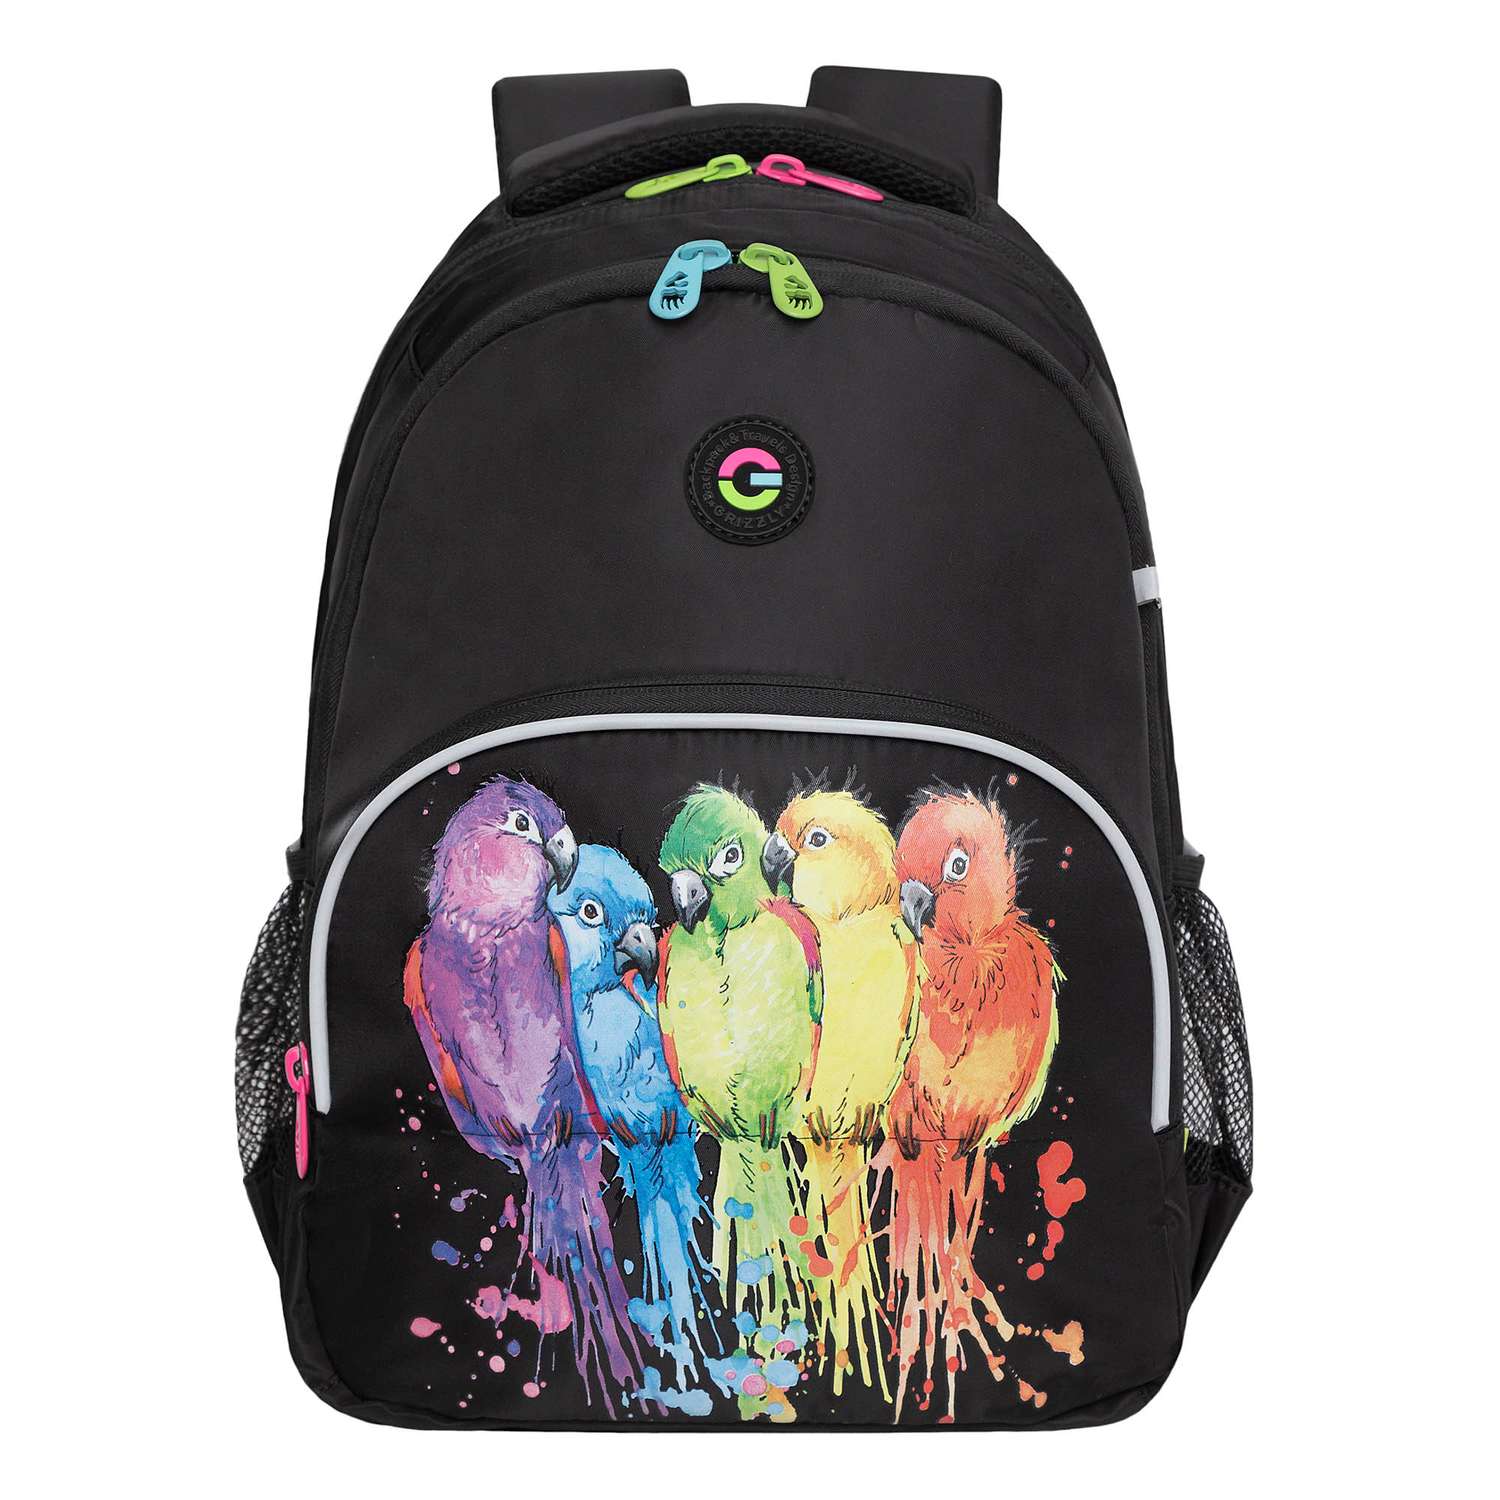 Рюкзак школьный Grizzly Черный RG-360-6/1 - фото 2